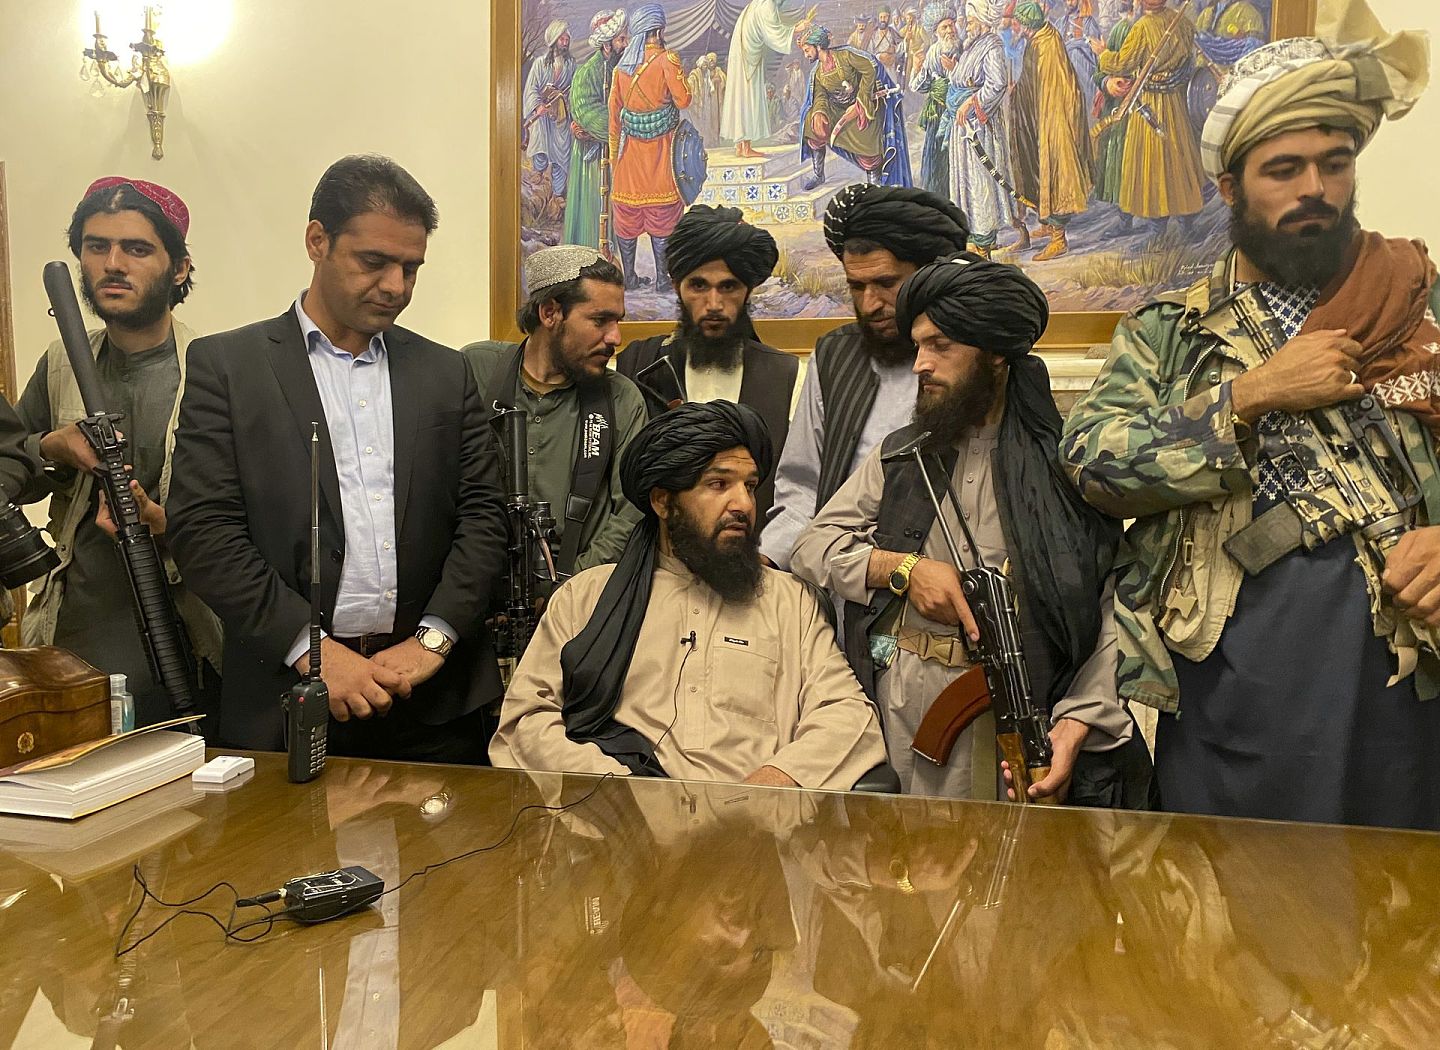 2021年8月15日星期日，阿富汗总统阿什拉夫·加尼 (Ashraf Ghani) 在阿富汗喀布尔逃离该国后，塔利班战士控制了阿富汗总统府。(AP Photo/Zabi Karimi)